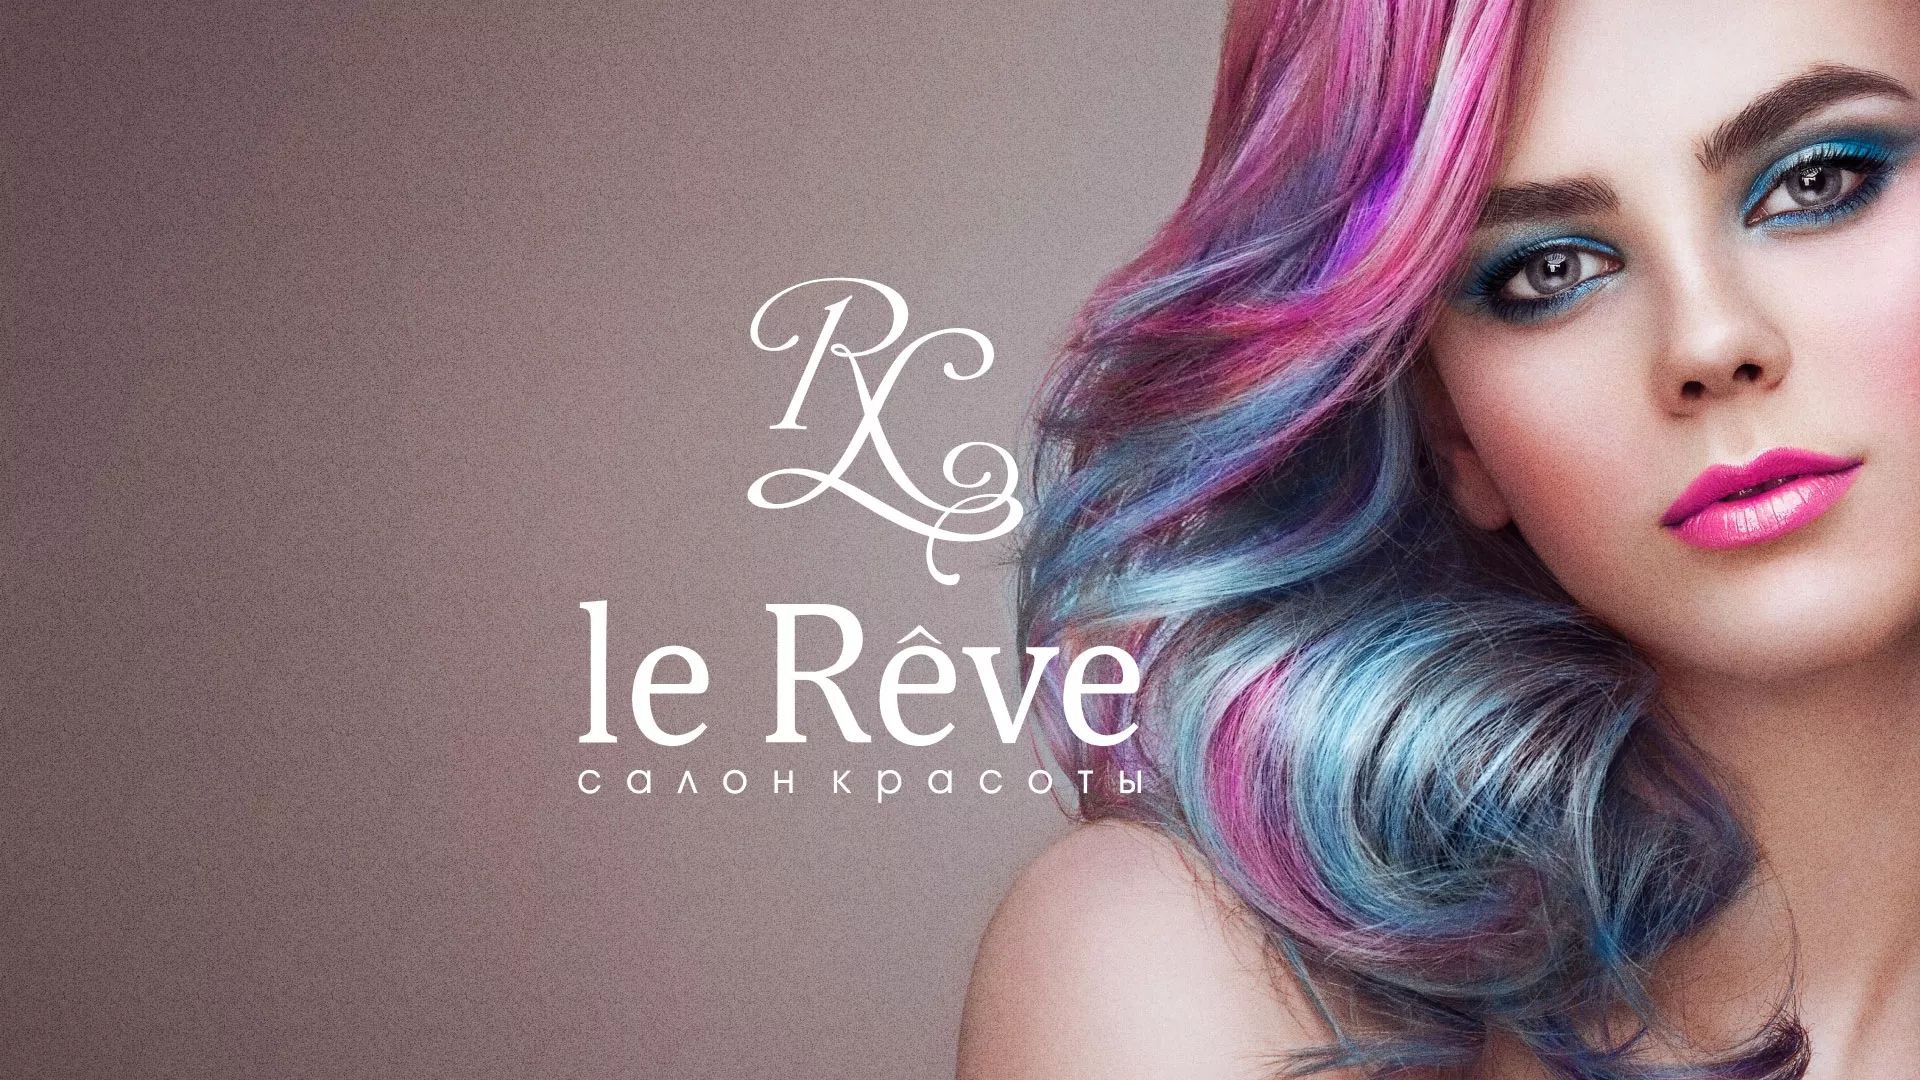 Создание сайта для салона красоты «Le Reve» в Алатыре